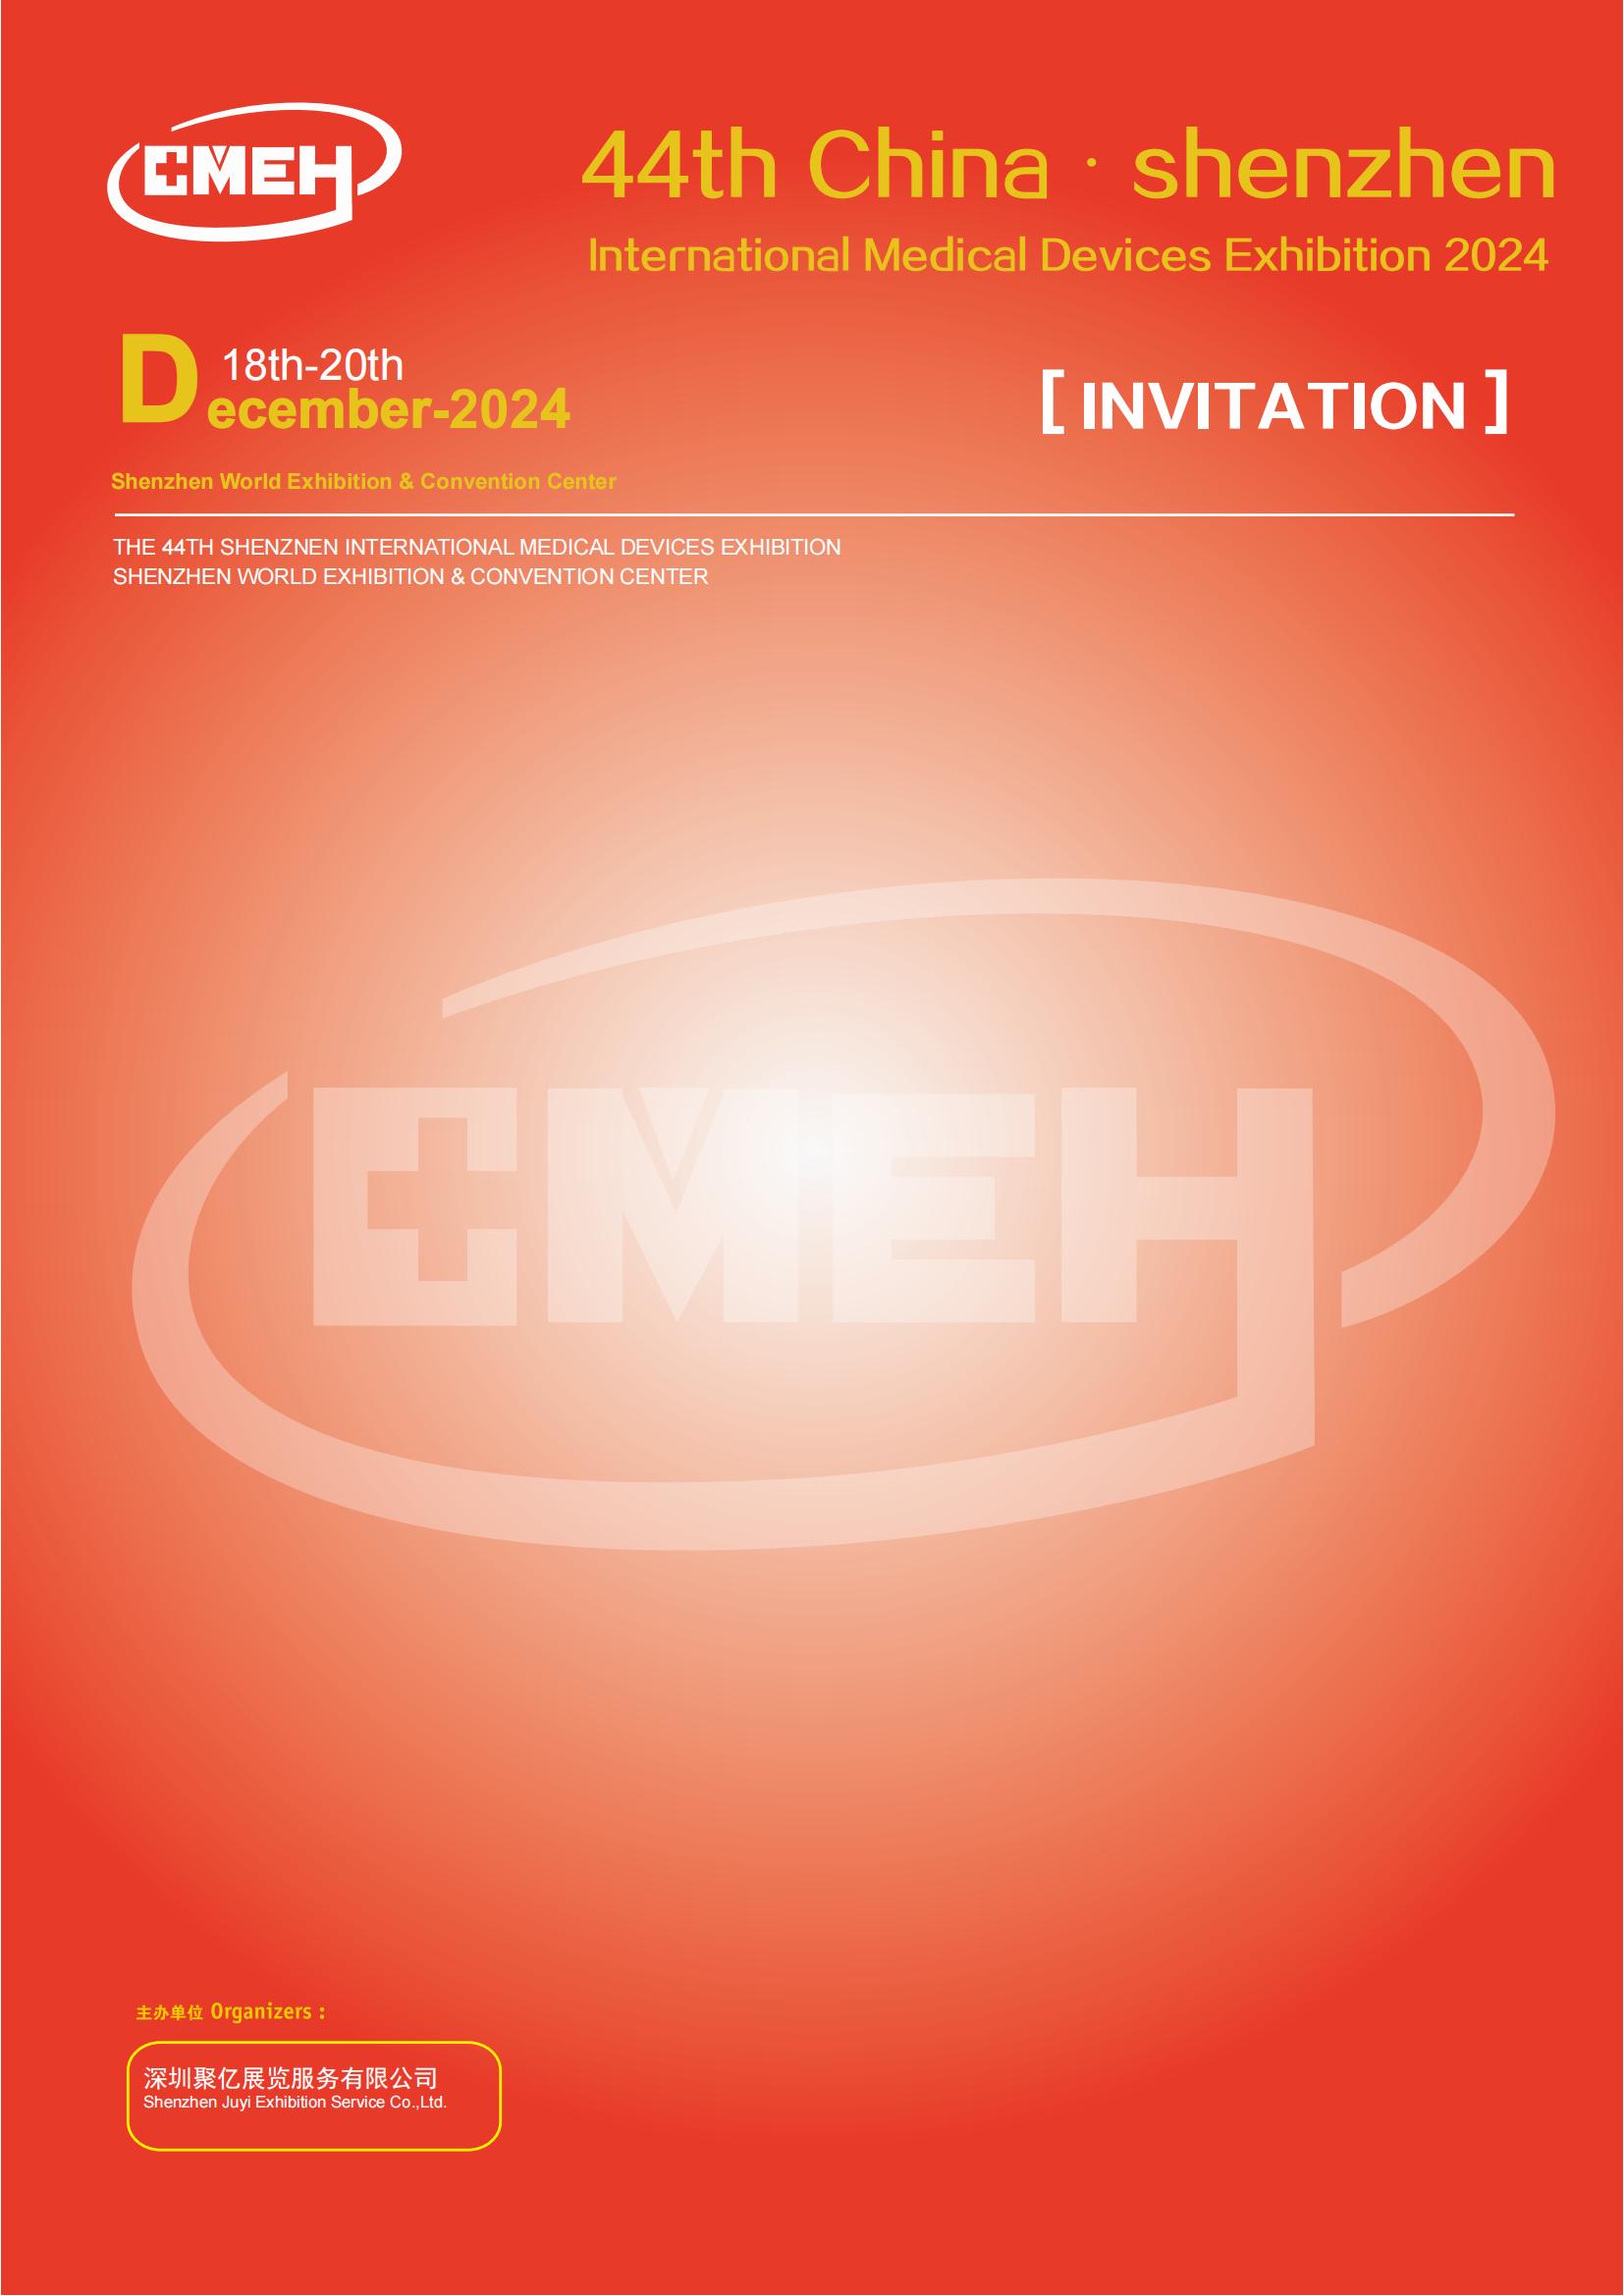 Shenzhen International Medical Devices Exhibition 2024